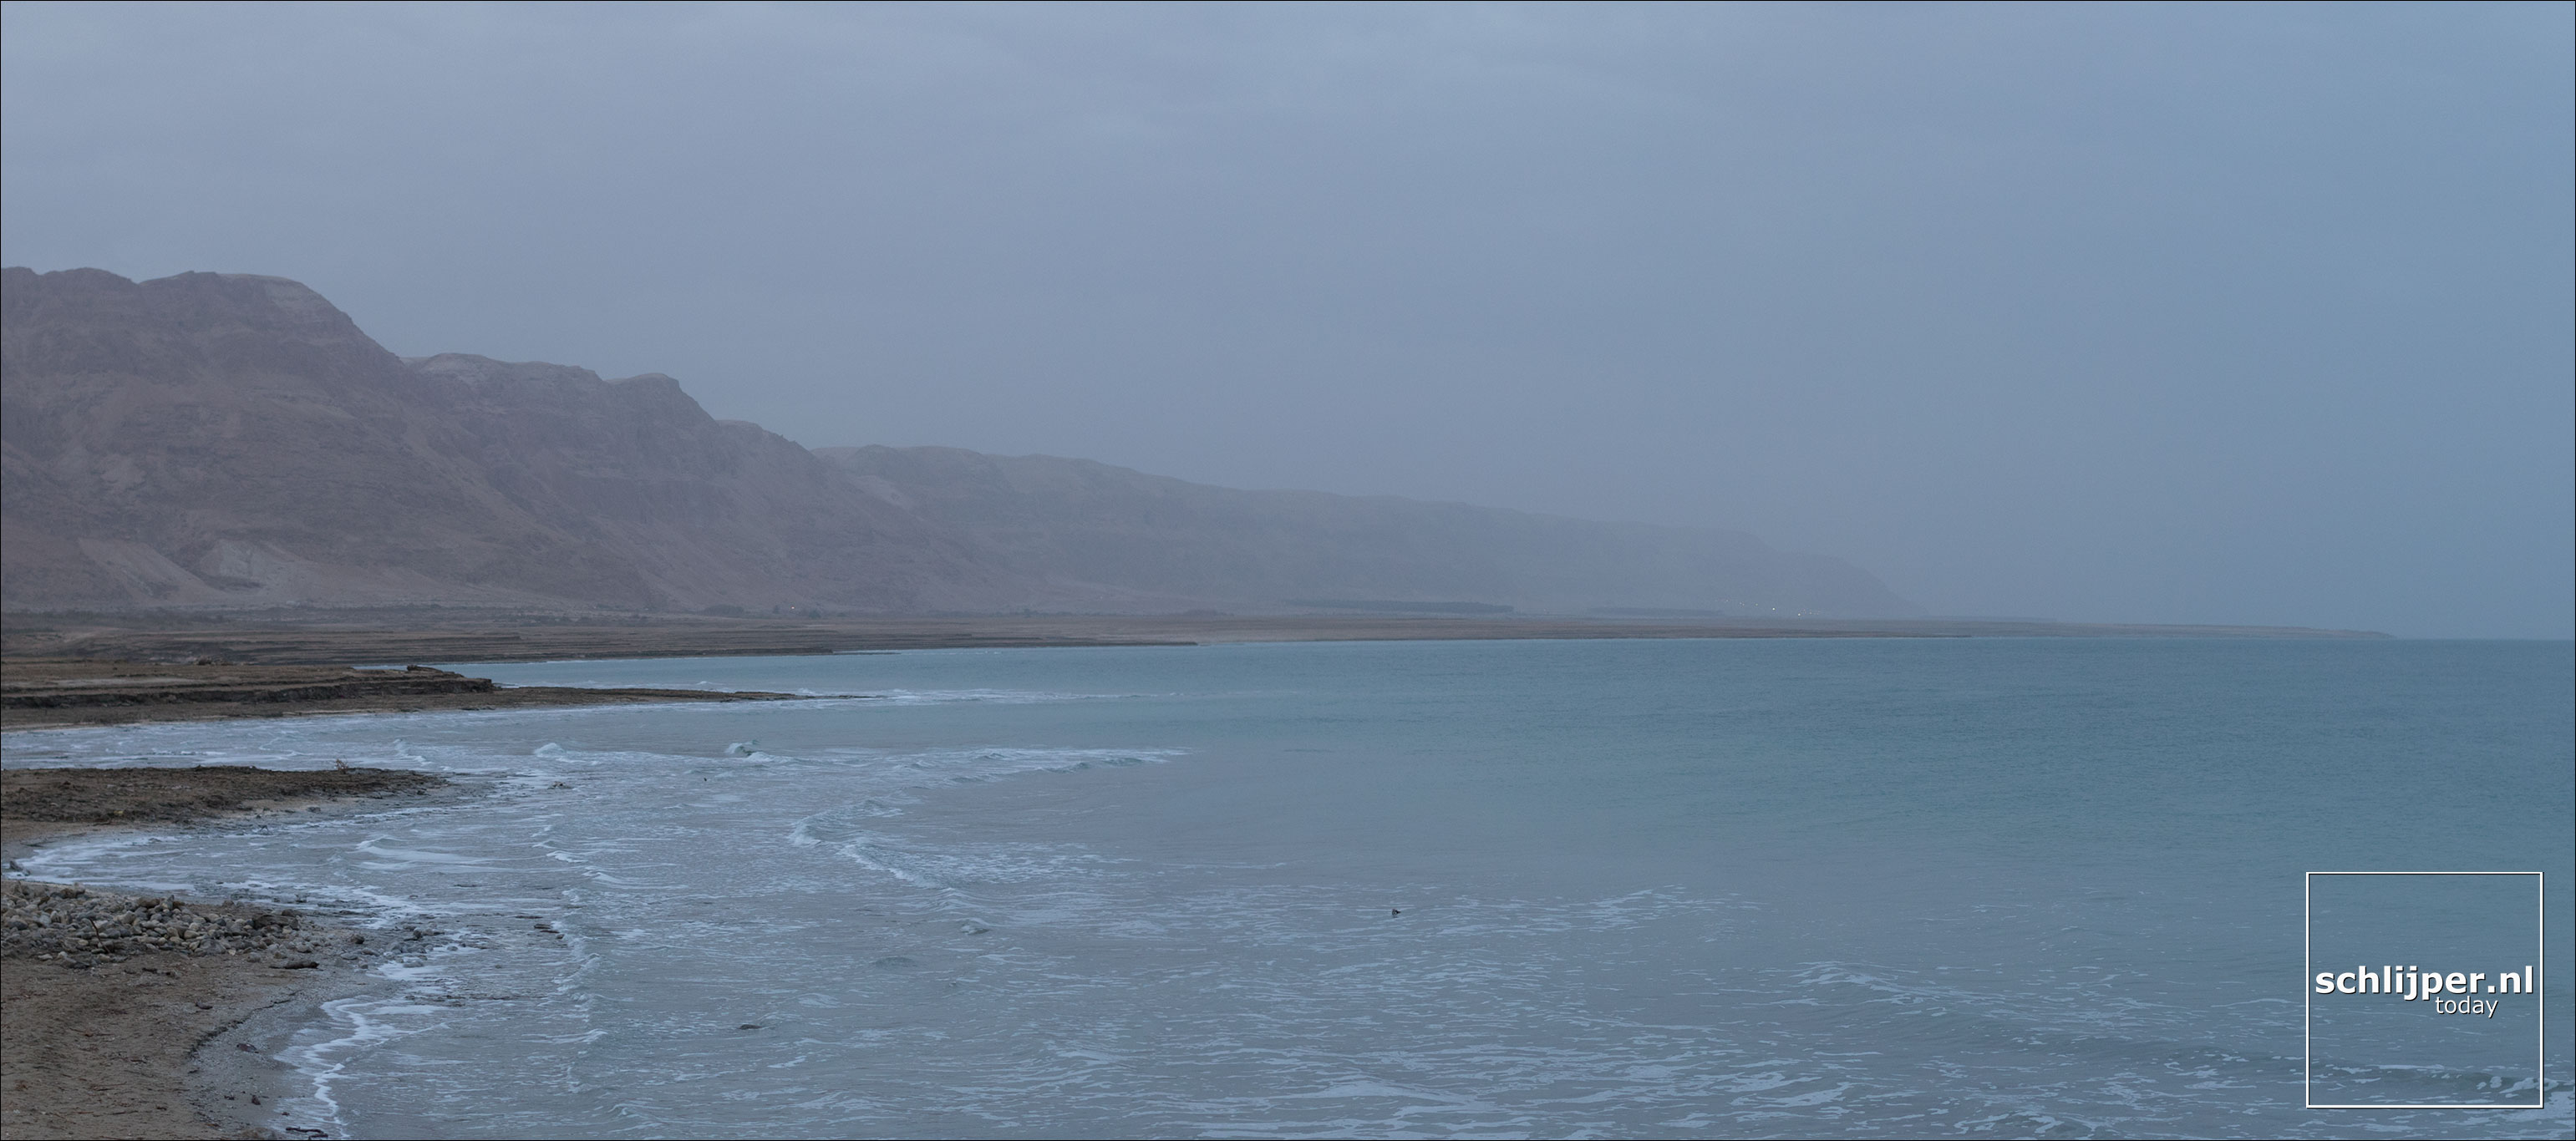 Israel, Dead Sea, 14 januari 2019